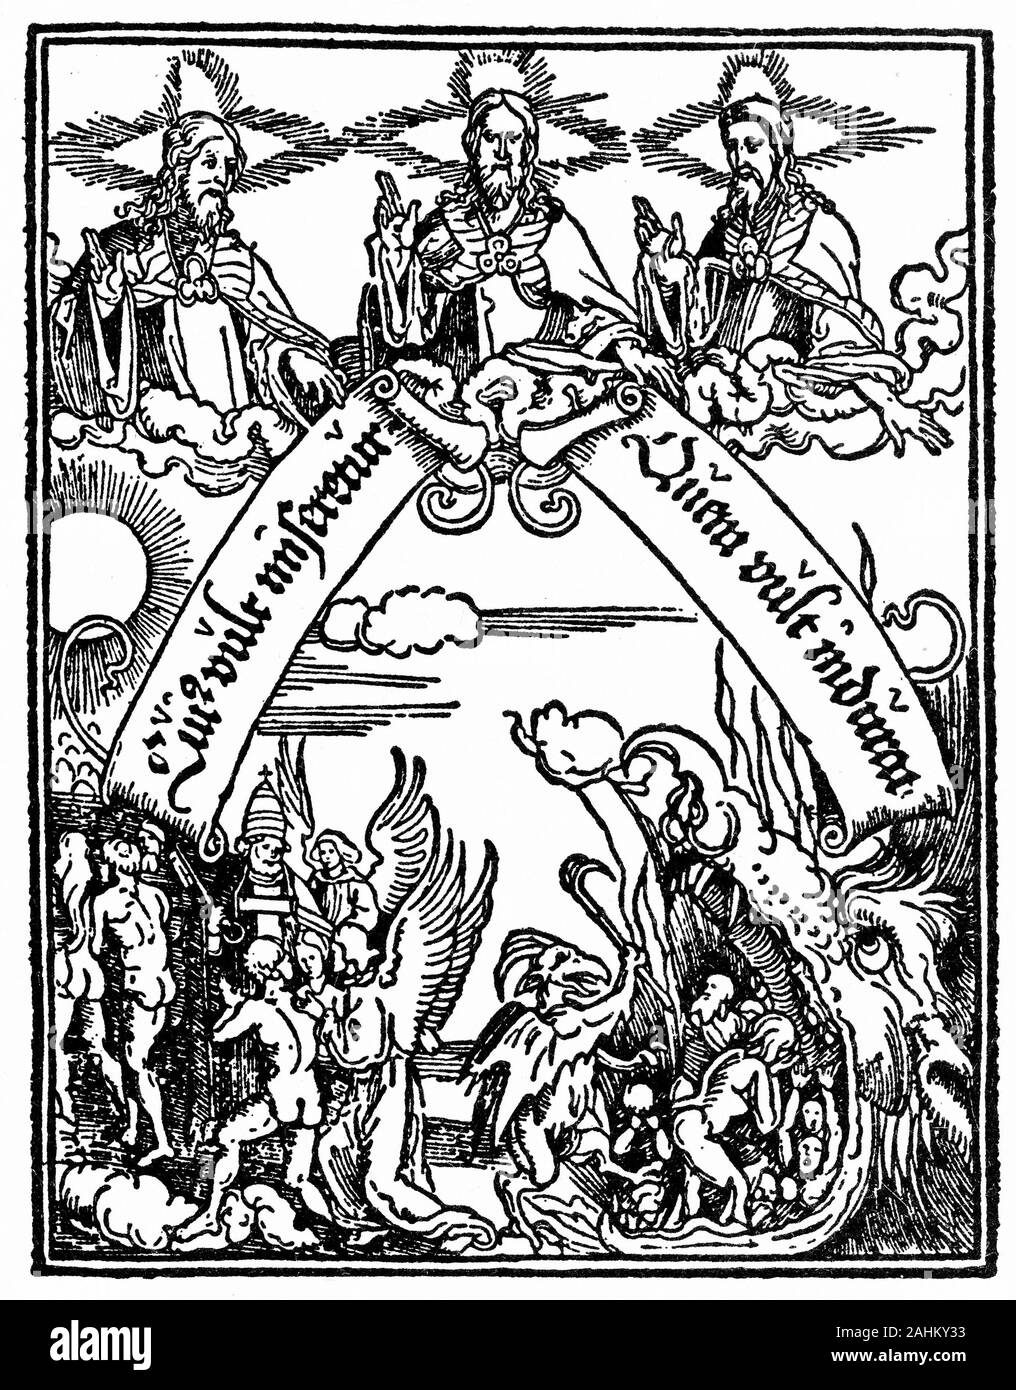 Gravur der Dreifaltigkeit als drei Männer in einem Versuch, die Menschen über die Gottheit während der Reformation mal zu lehren dargestellt. Stockfoto